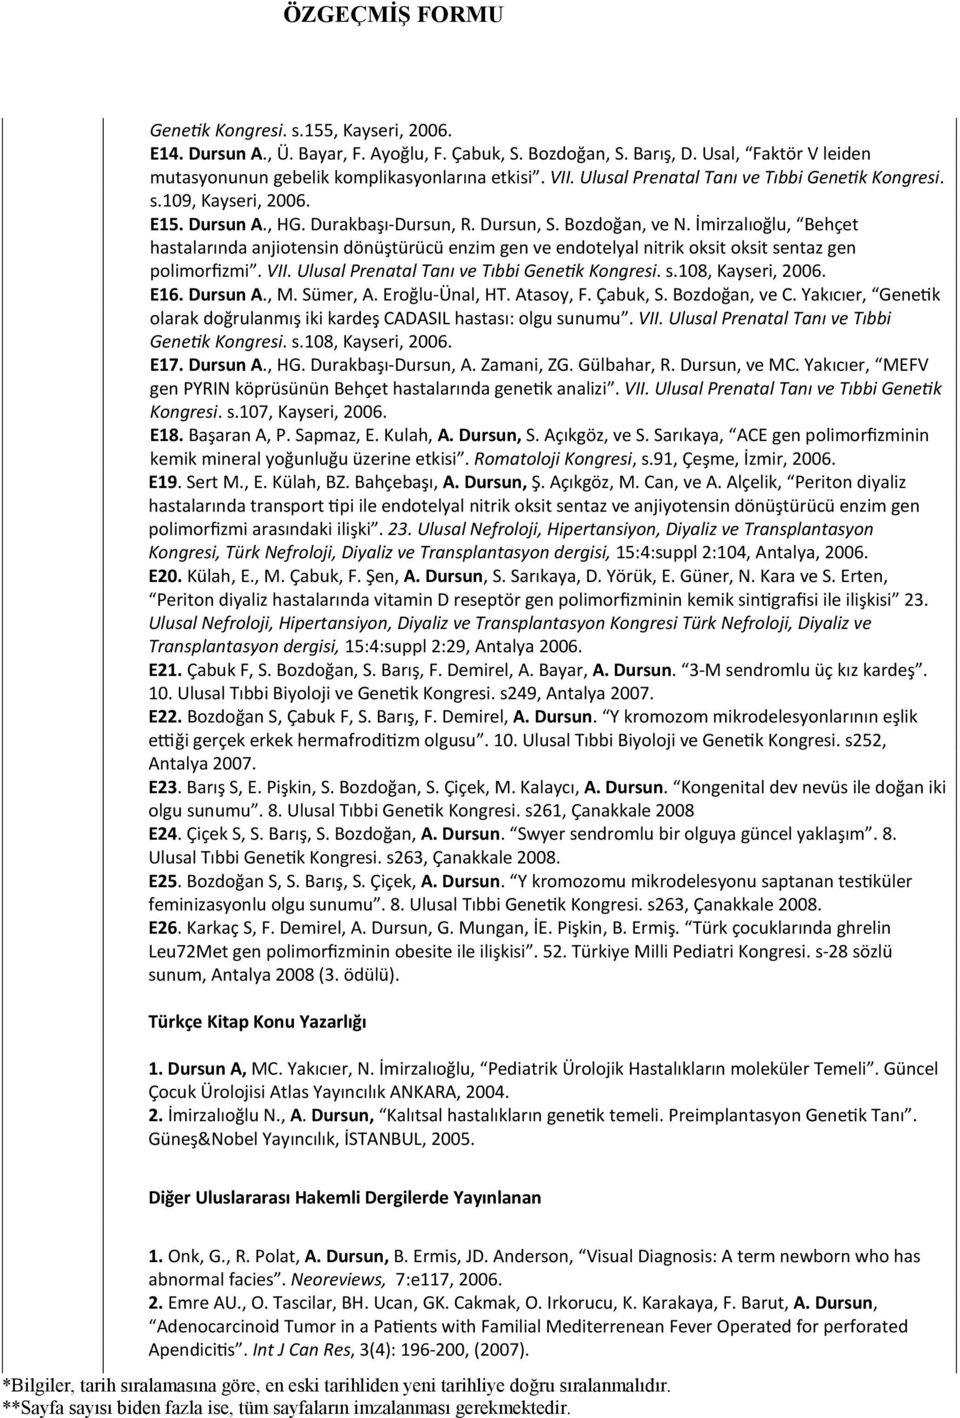 İmirzalıoğlu, Behçet hastalarında anjiotensin dönüştürücü enzim gen ve endotelyal nitrik oksit oksit sentaz gen polimorfizmi. VII. Ulusal Prenatal Tanı ve Tıbbi Genetik Kongresi. s.108, Kayseri, 2006.